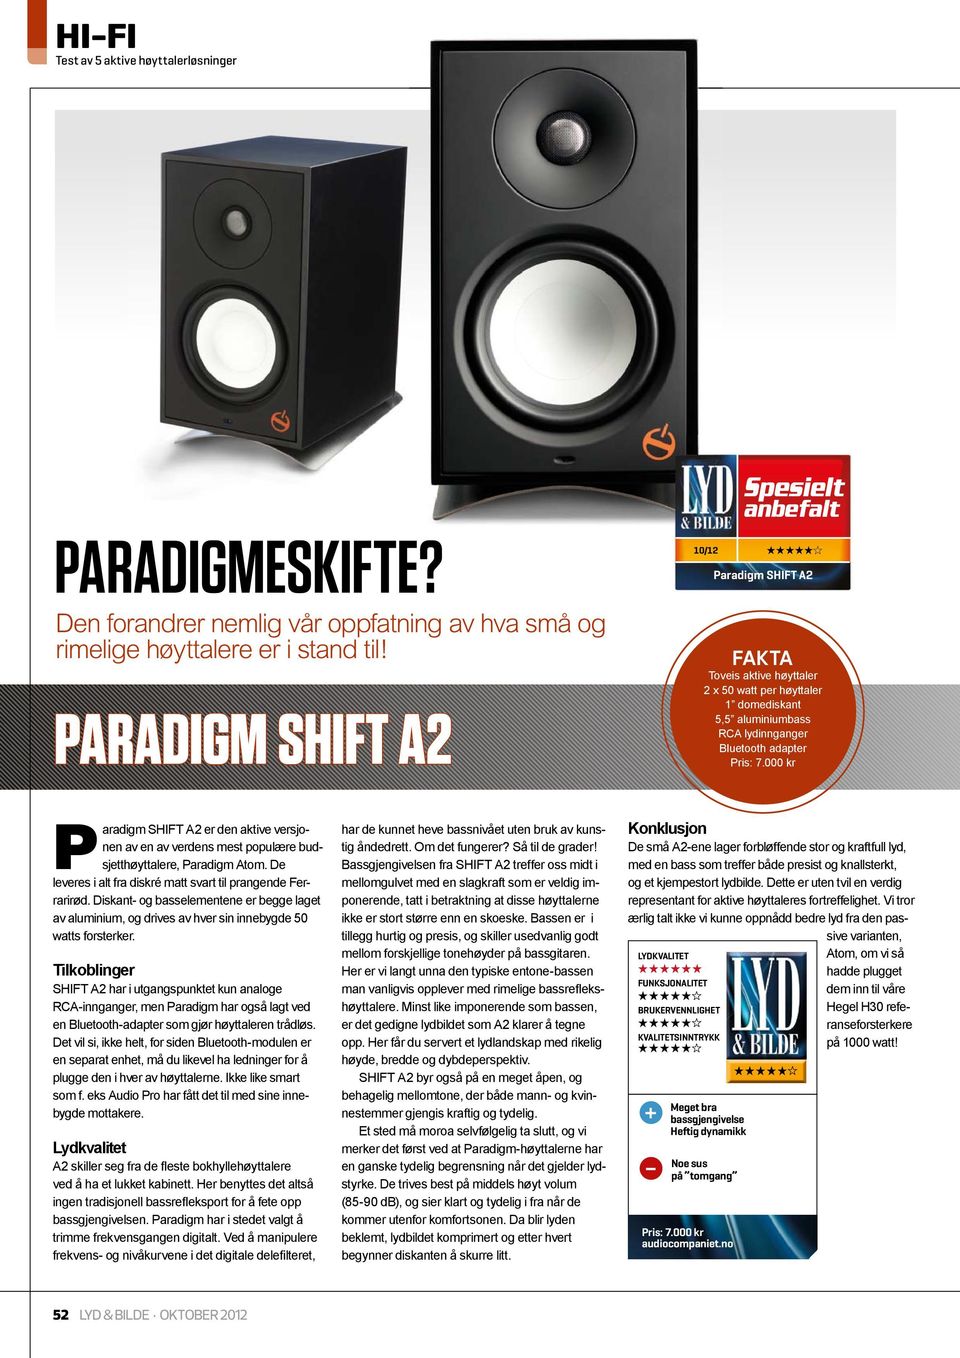 000 kr Paradigm SHIFT A2 er den aktive versjonen av en av verdens mest populære budsjetthøyttalere, Paradigm Atom. De leveres i alt fra diskré matt svart til prangende Ferrarirød.